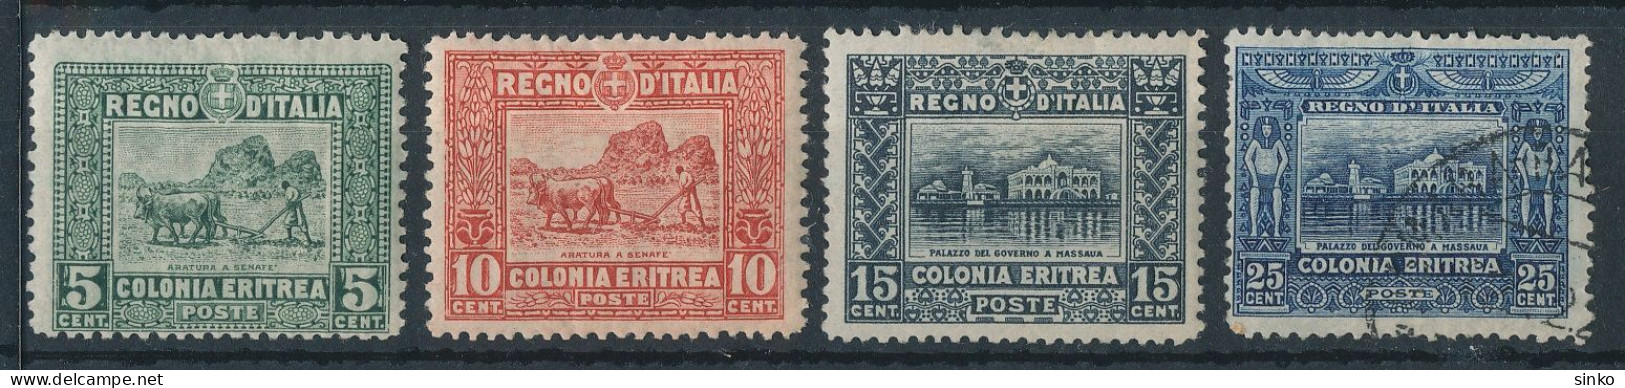 1910. Italian Eritrea - Eritrea